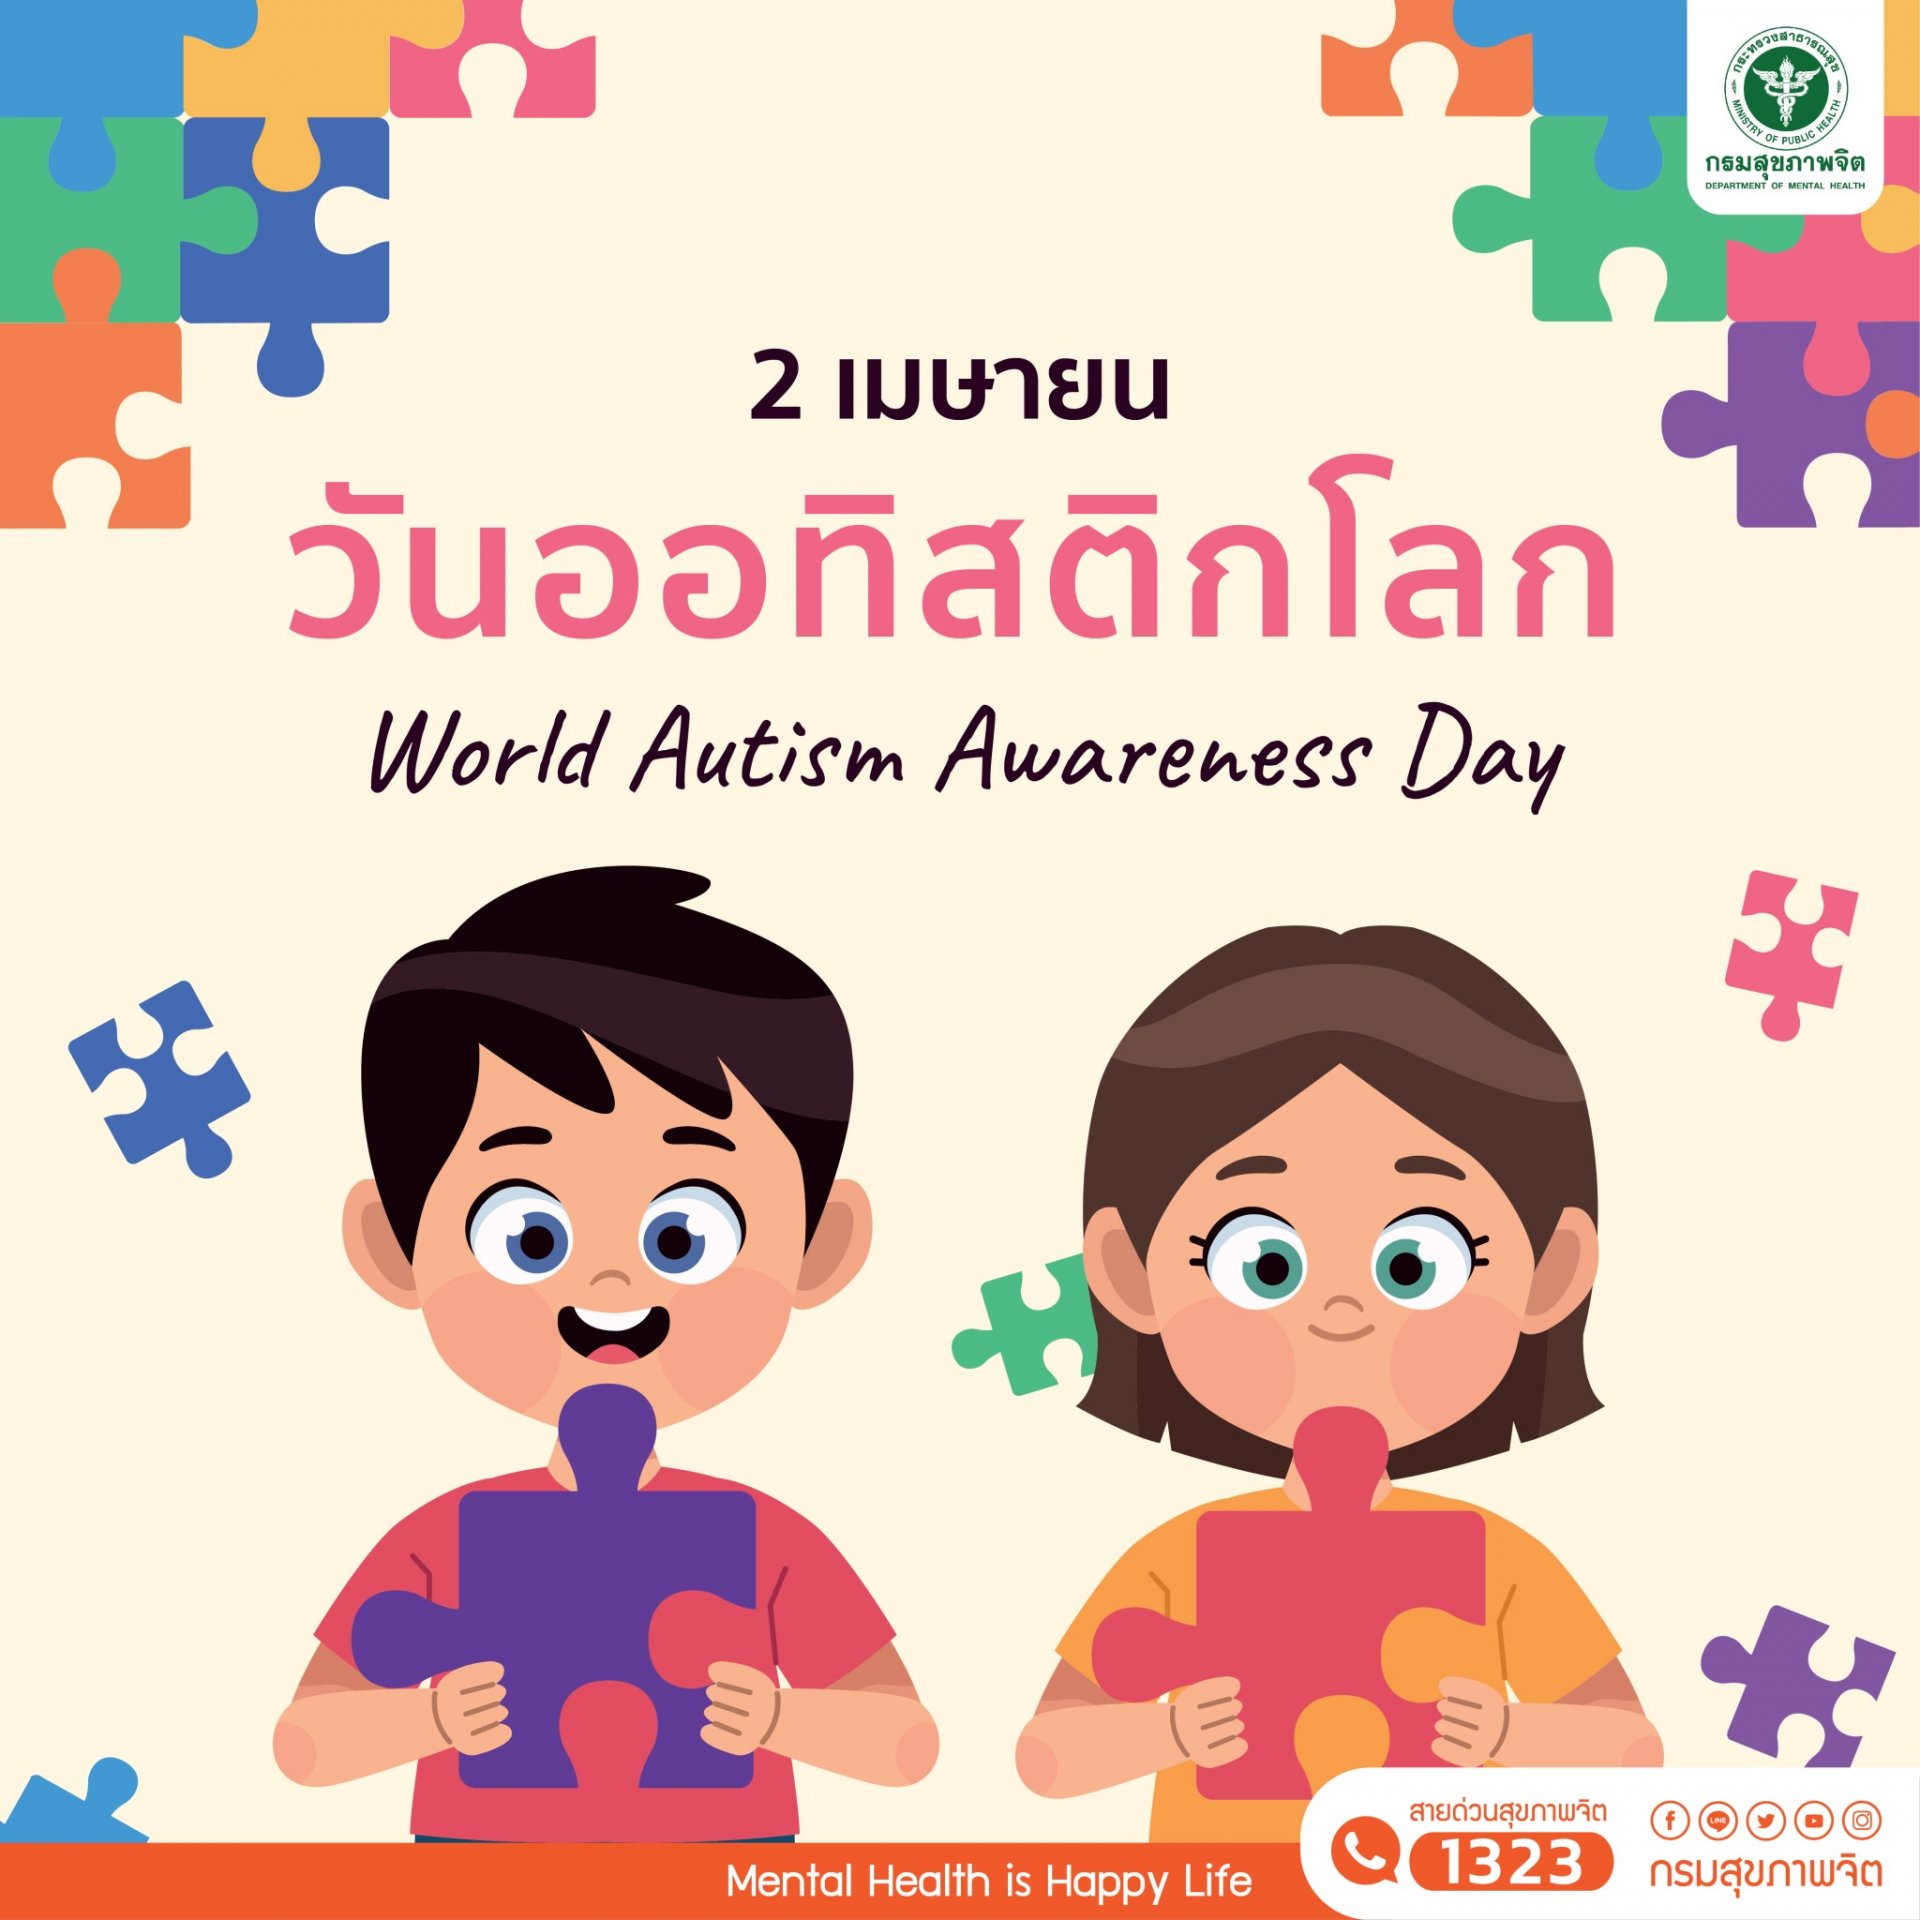 2 เมษายน วันออทิสติกโลก World Autism Awareness Day